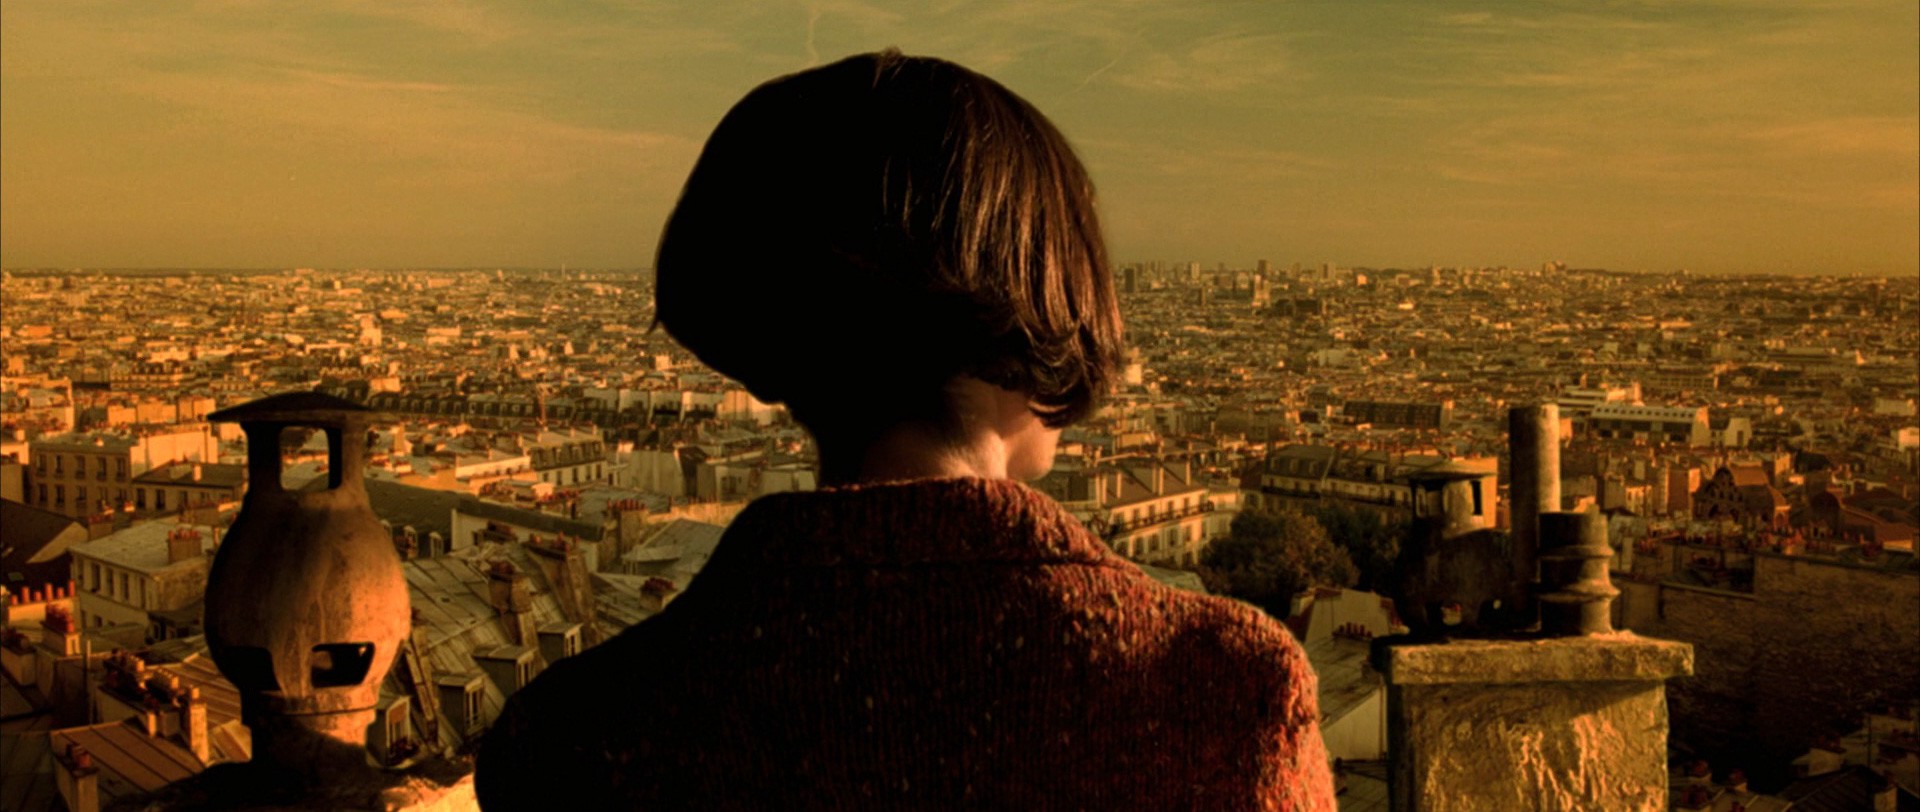 Amelie (Audrey Tautou) overlooks Paris